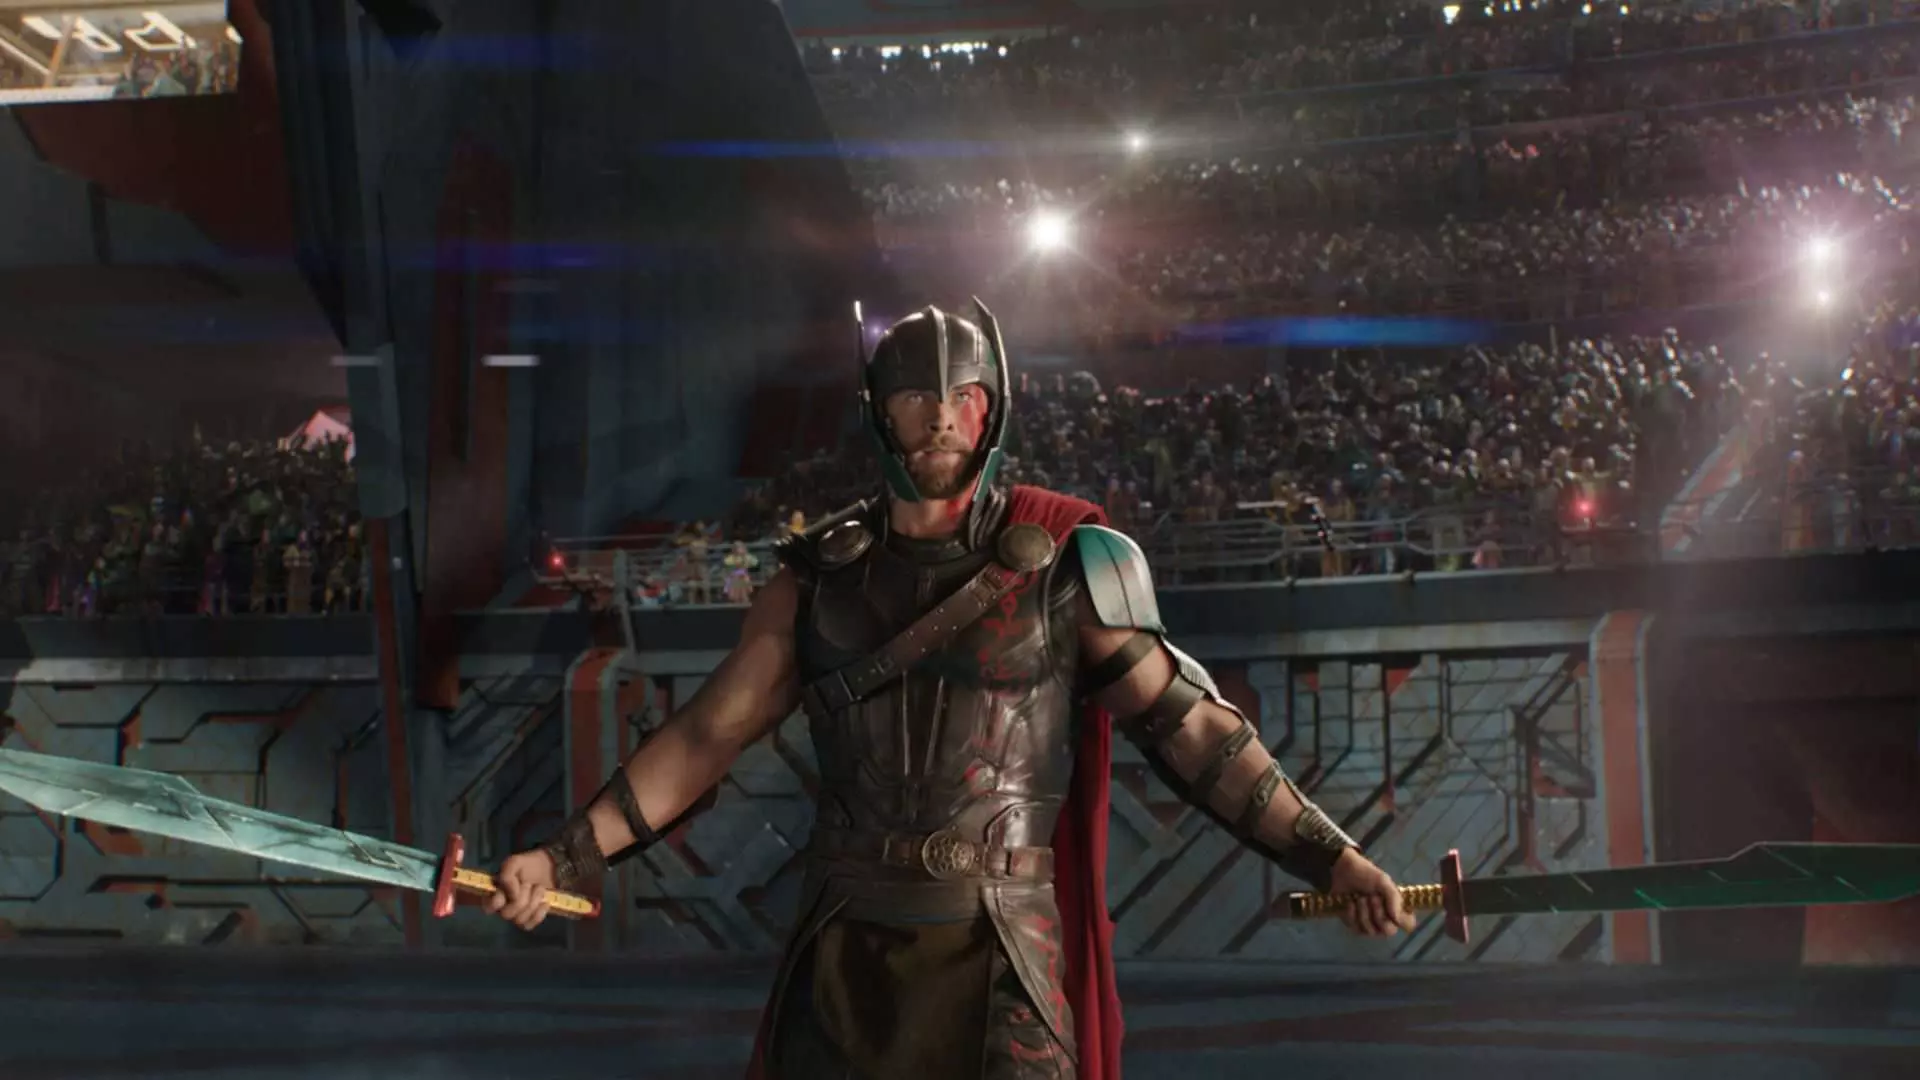 کریس همسورث در نقش تور در مبارزه گلادیاتوری در فیلم Thor: Ragnarok